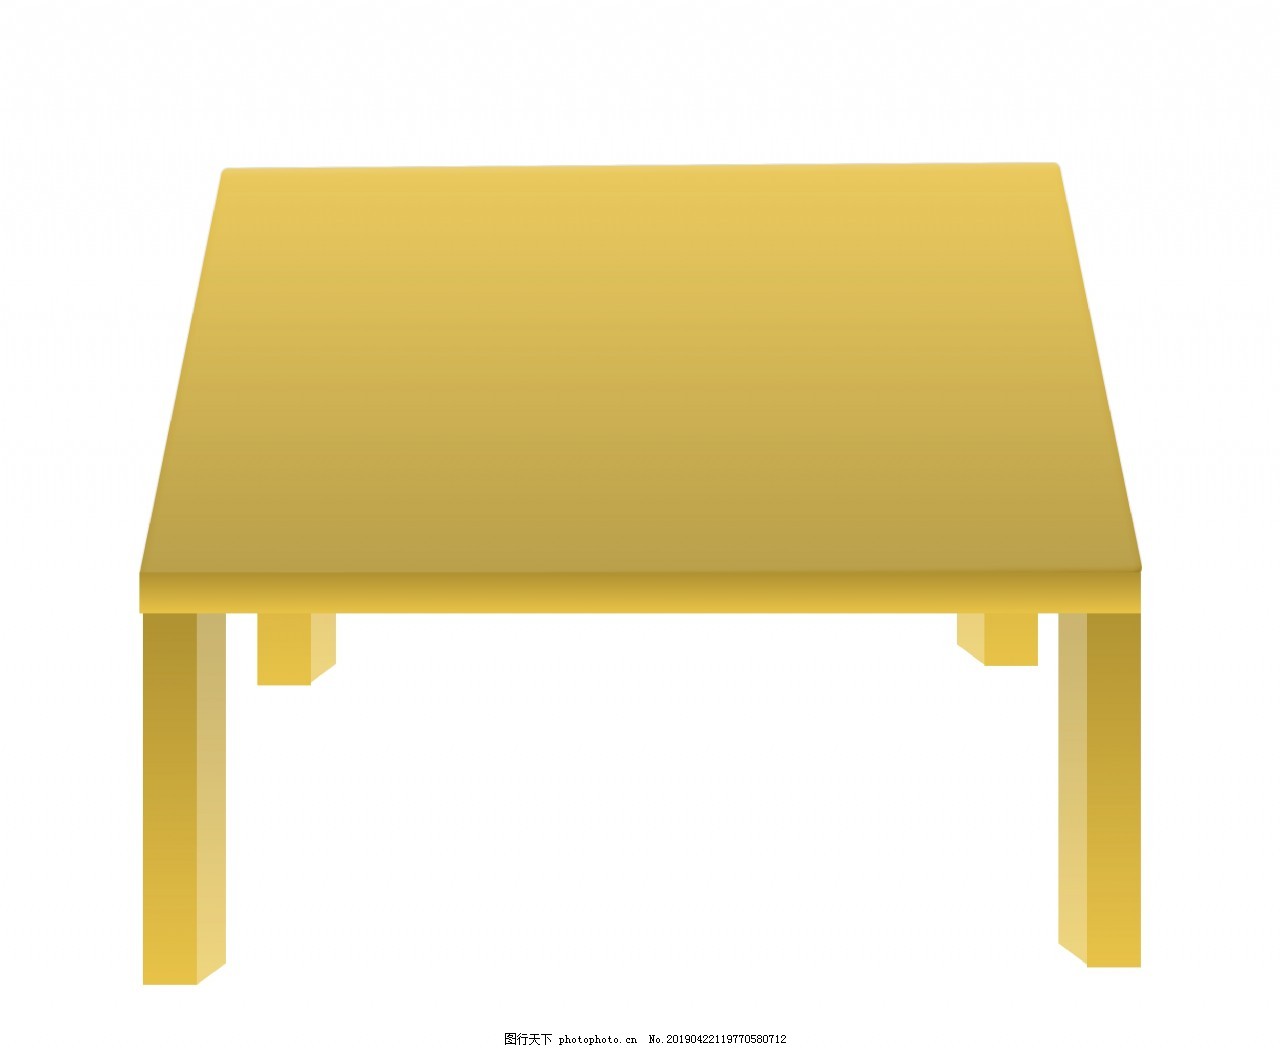 黄色正方形桌子图片 装饰图案 设计元素 图行天下素材网